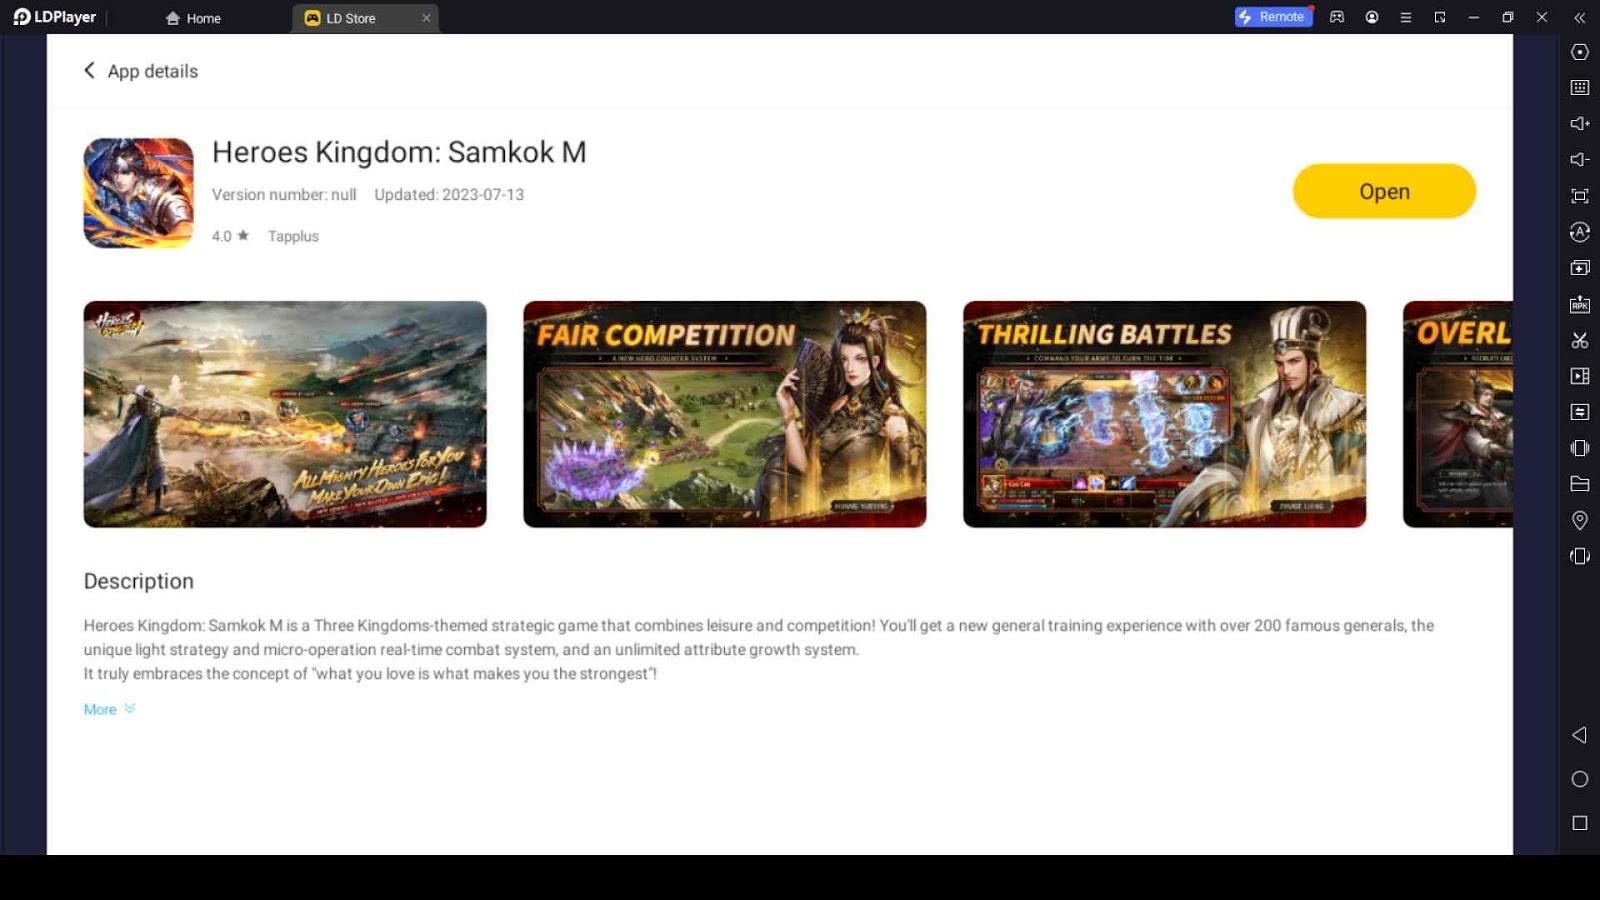 How to Run Heroes Kingdom: Samkok M Using LDPlayer 9